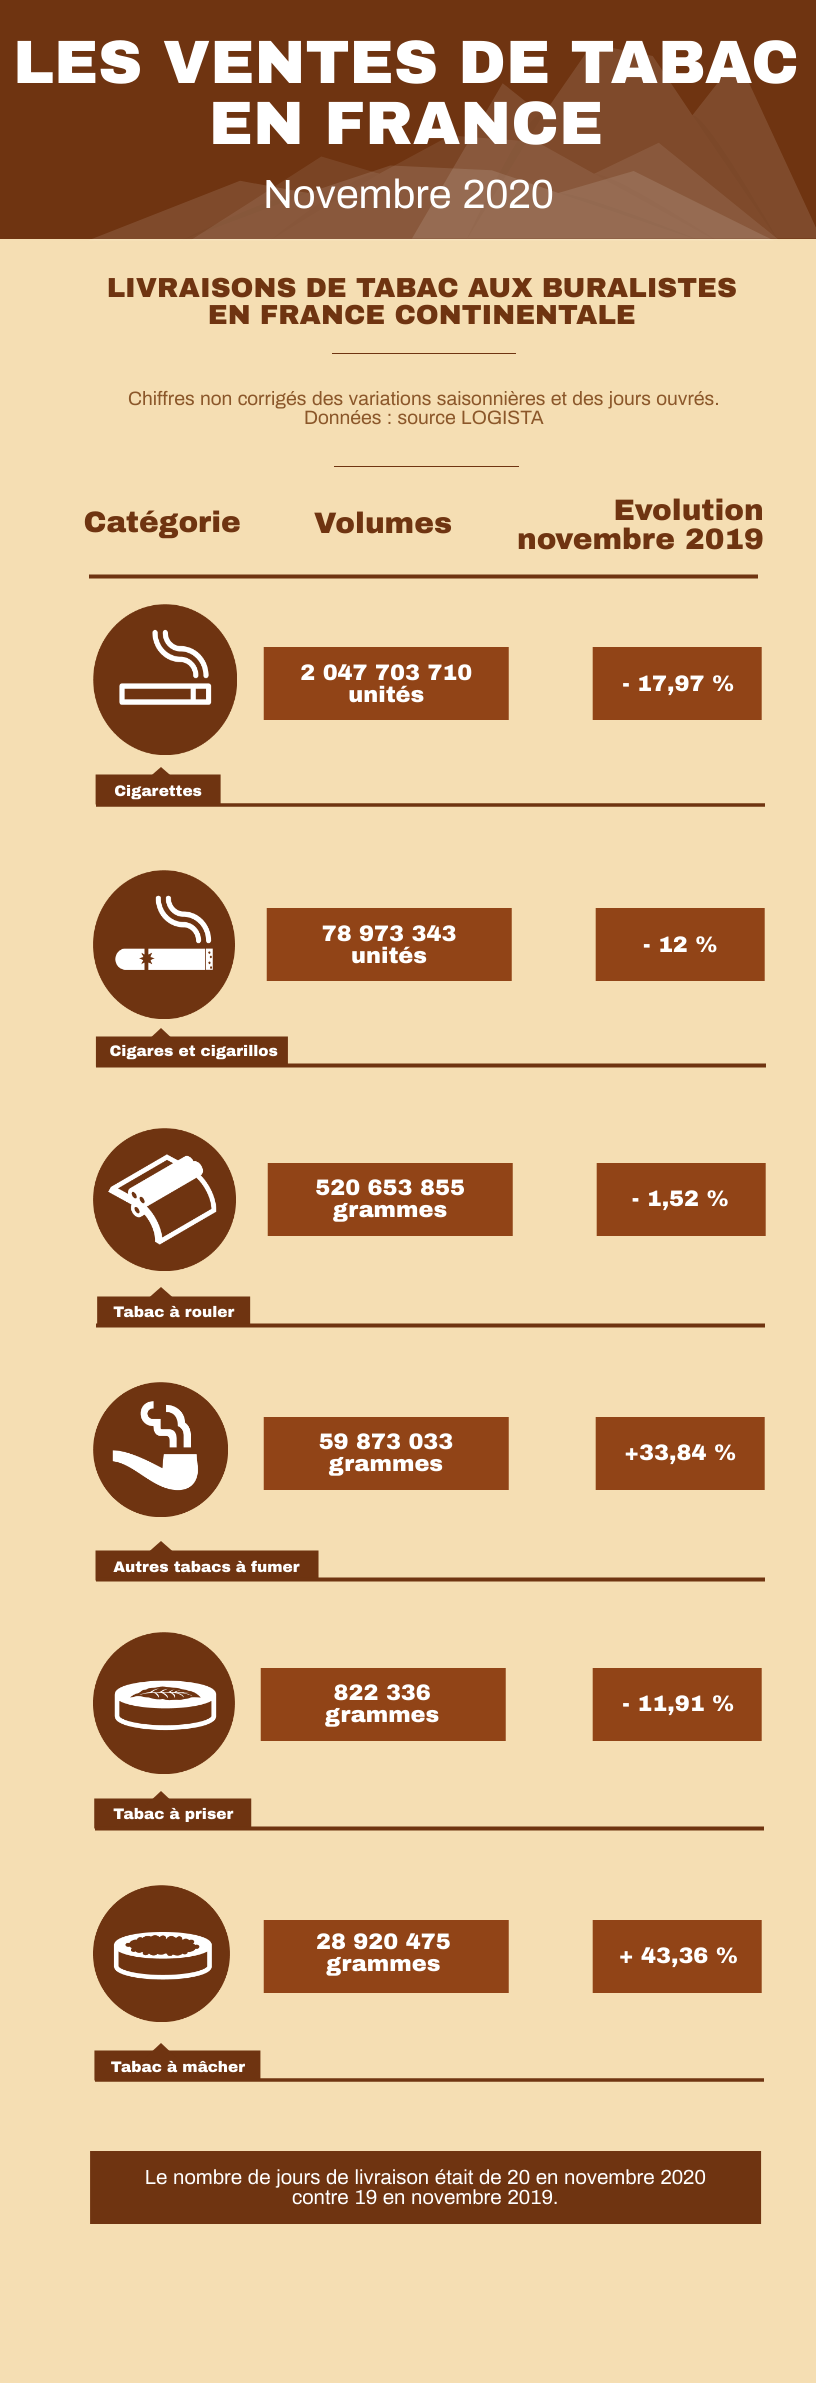 Infographie des ventes de tabacs en France continentale en novembre 2020